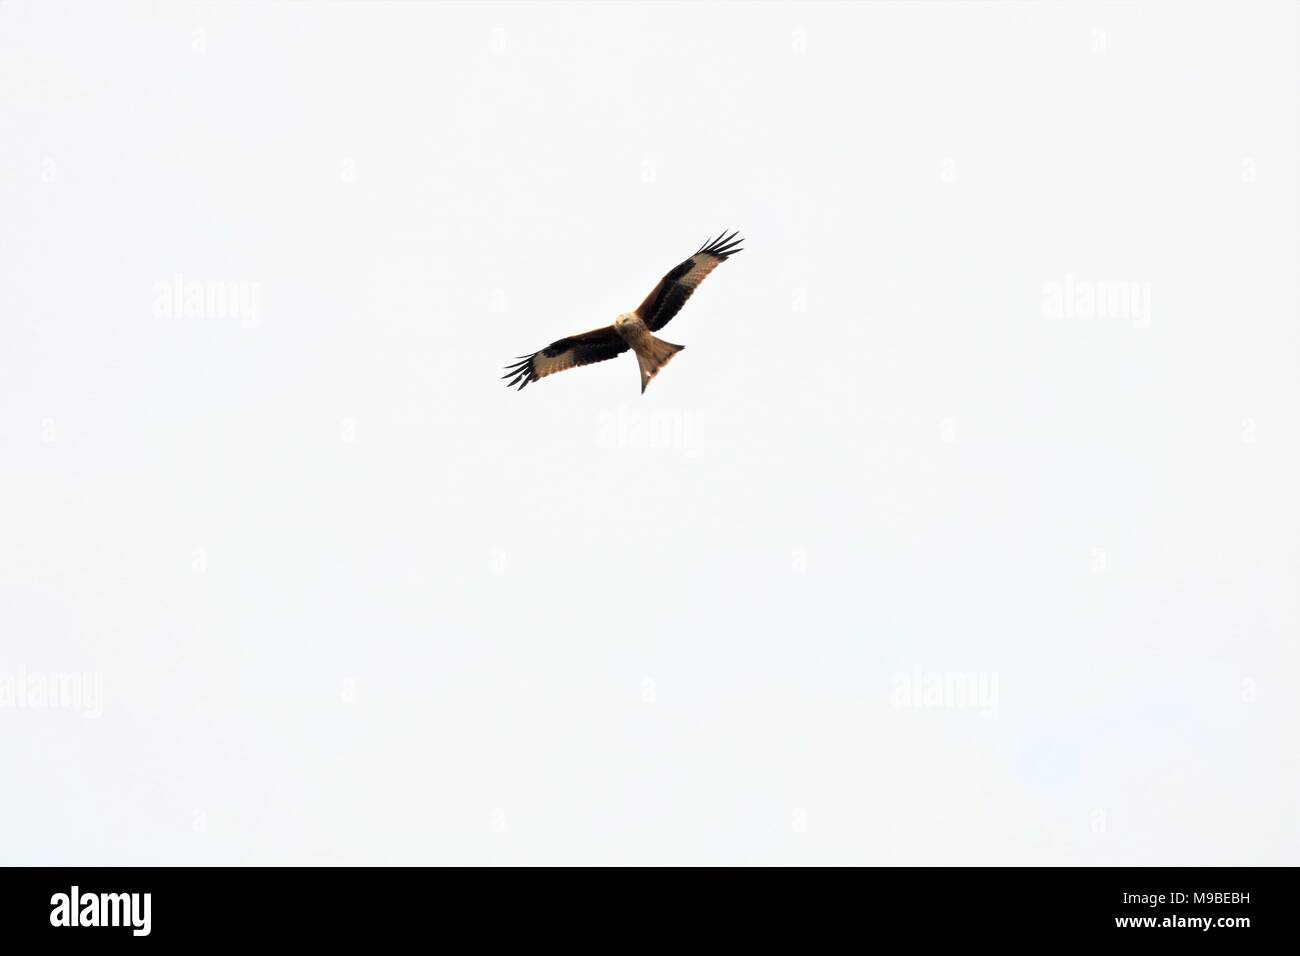 Red Kite bird flying in sky Stock Photo